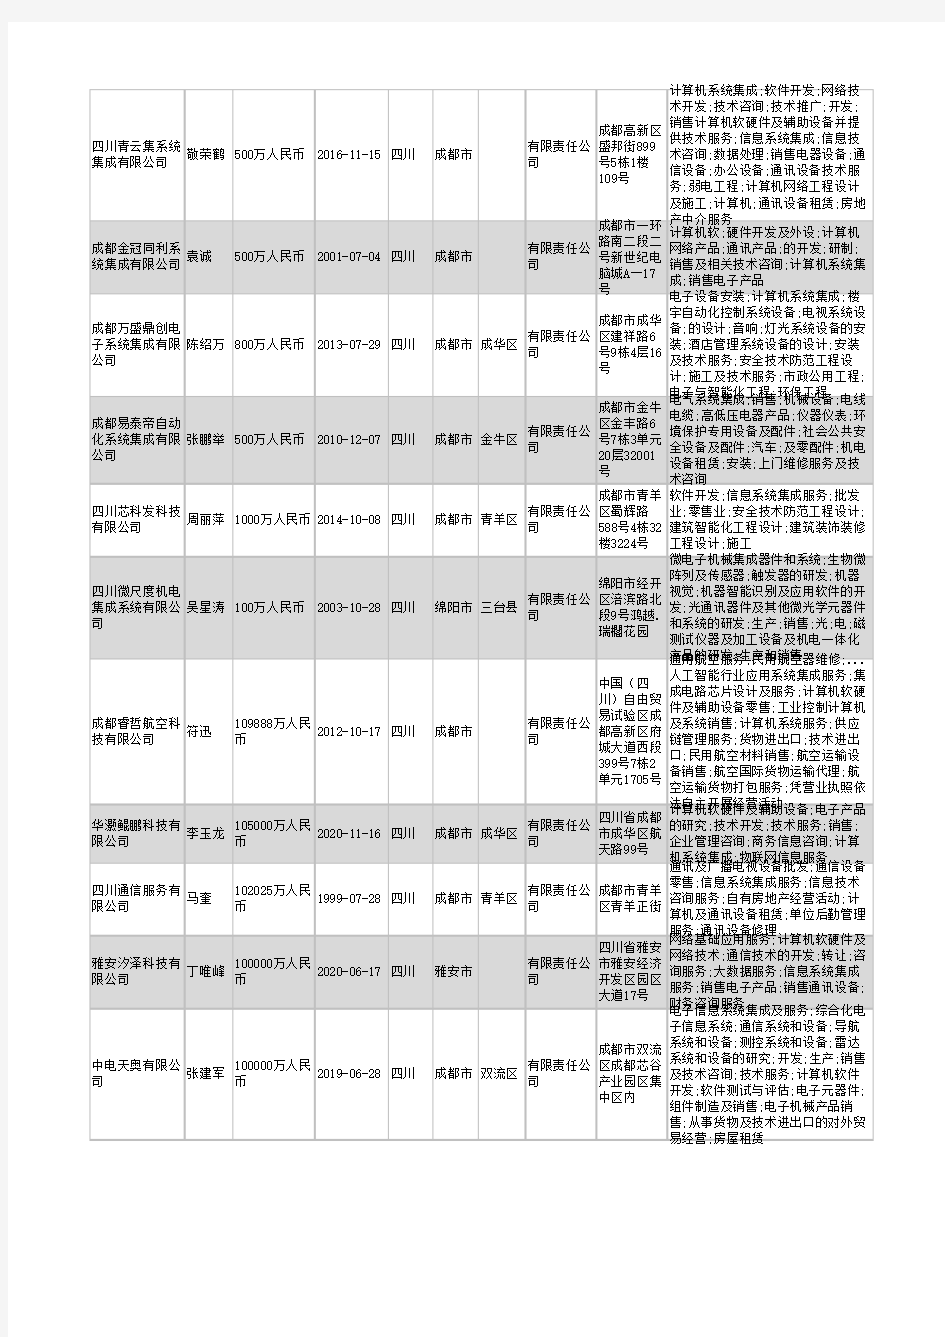 2021年四川省系统集成行业企业名录3214家